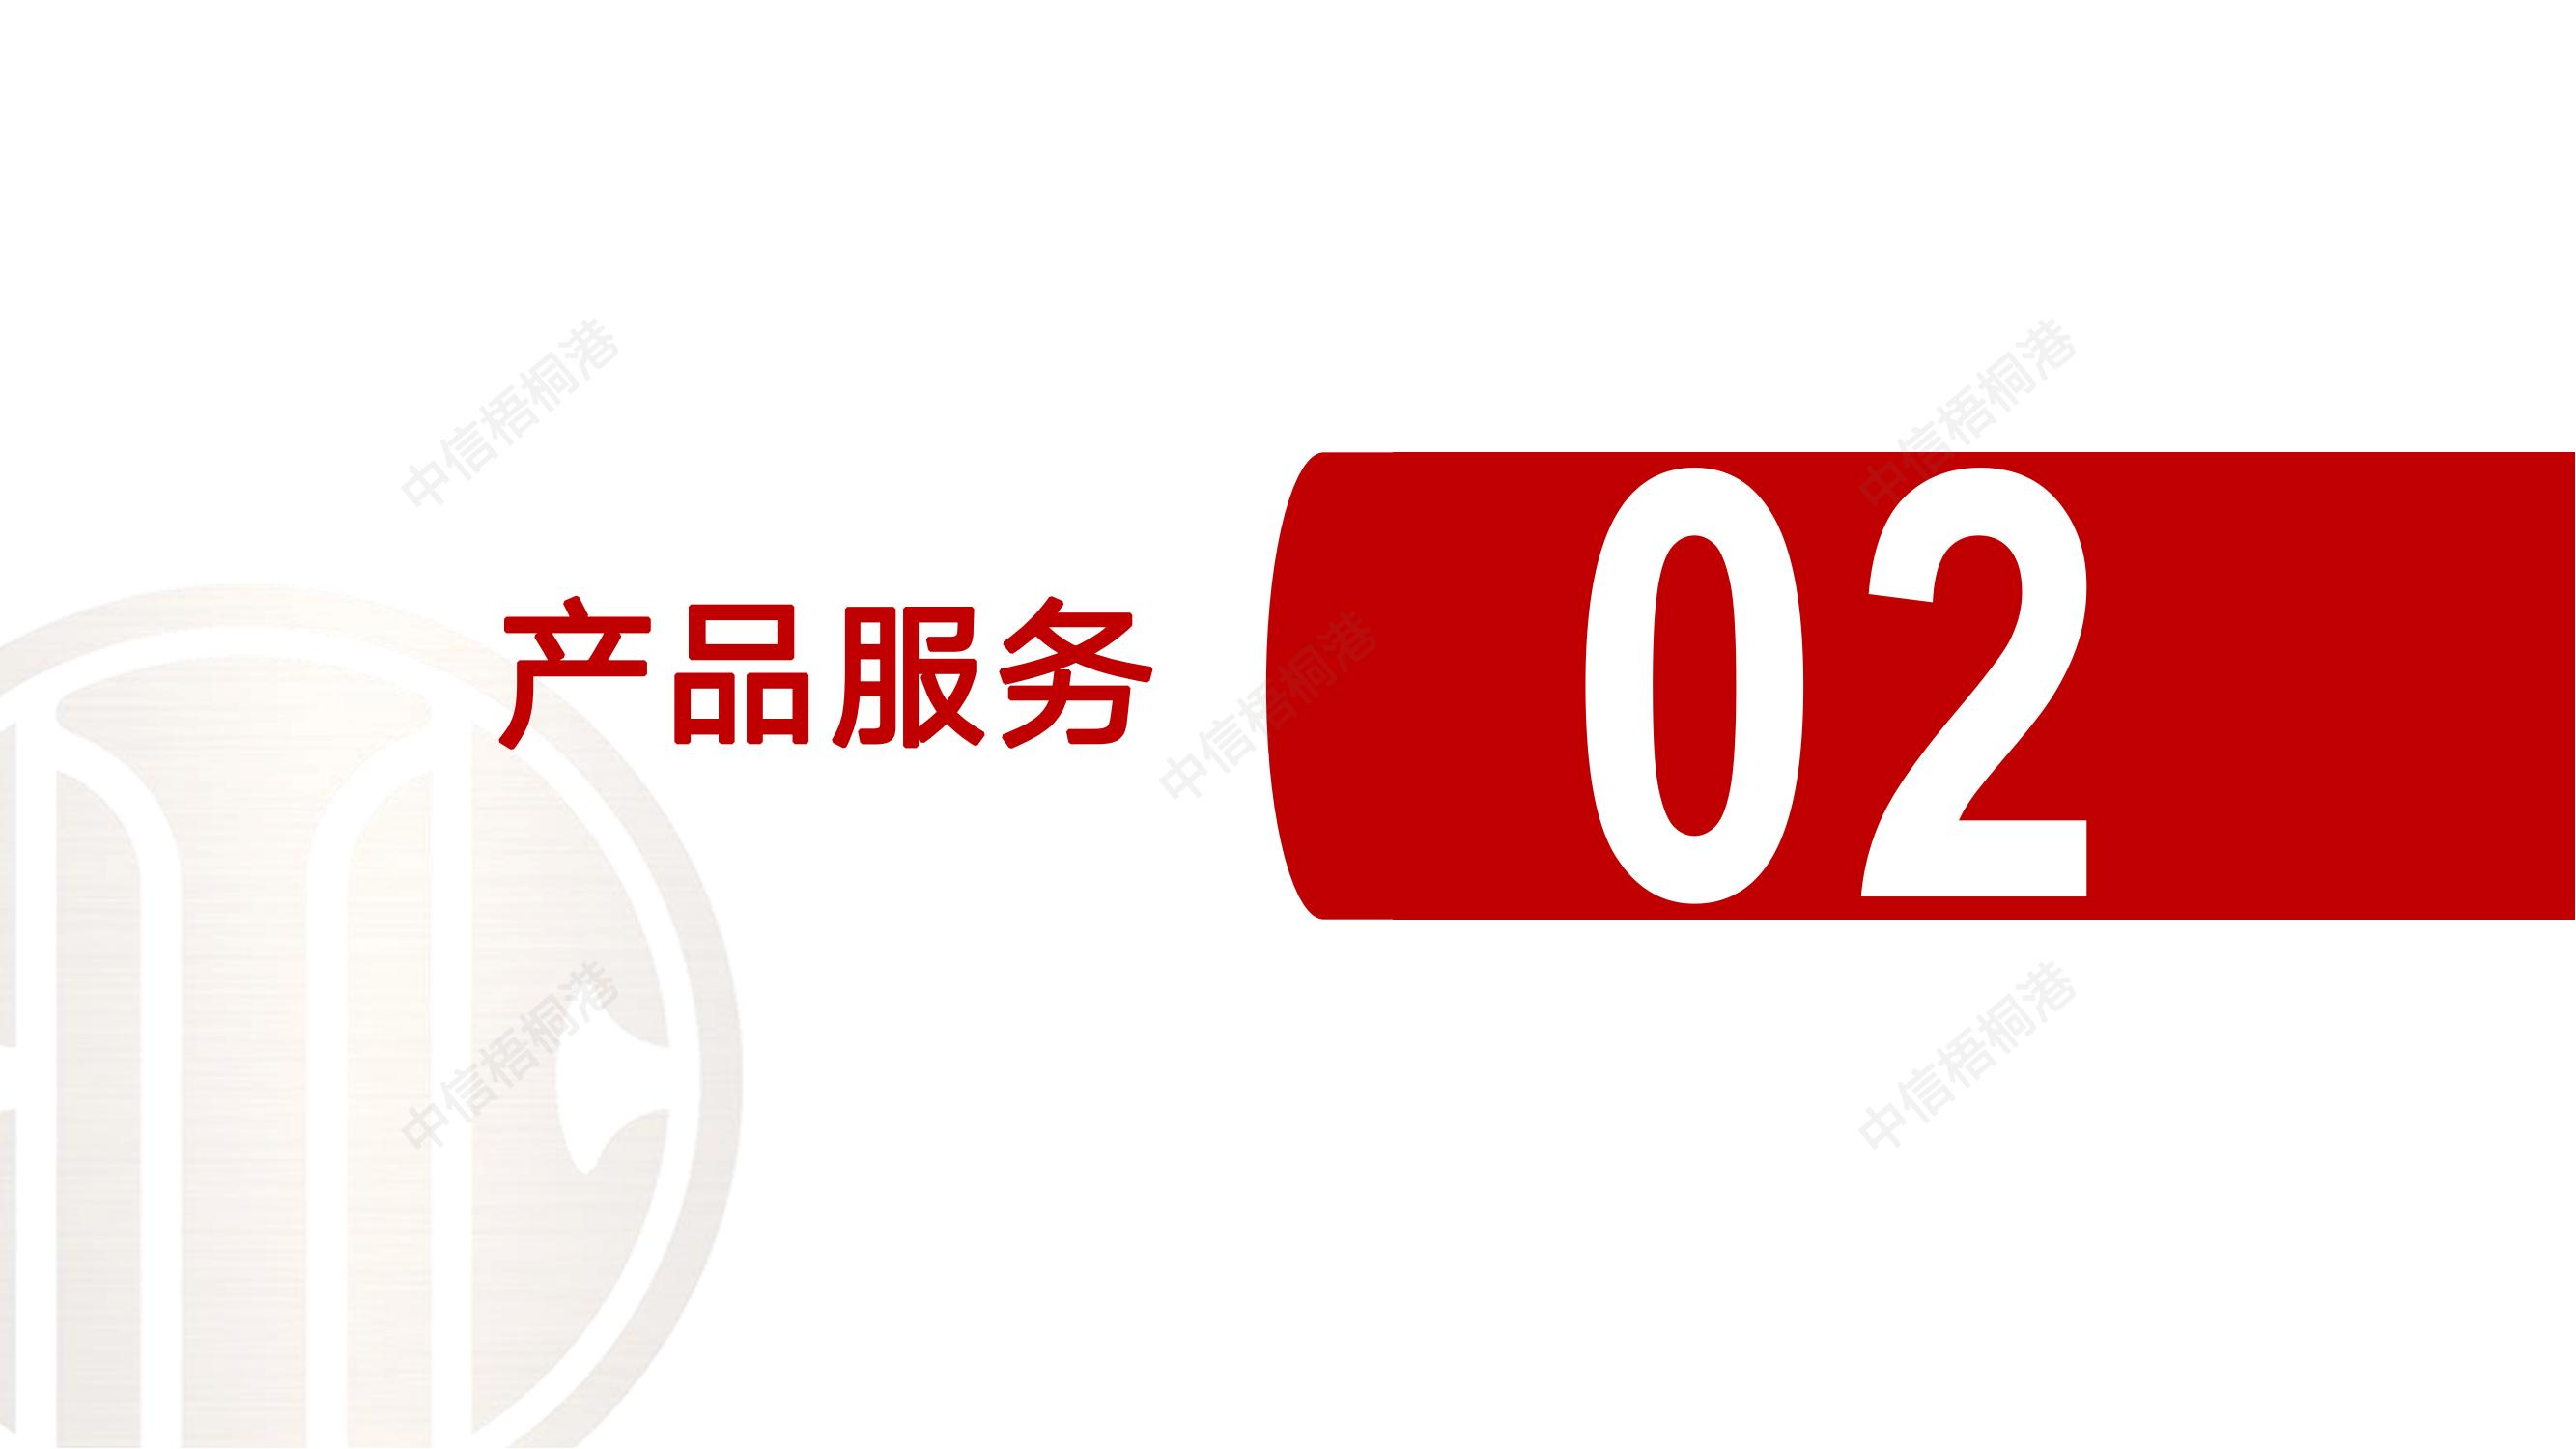 【公司简介】中信梧桐港供应链综合解决方案（202307）更新-1_09.jpg